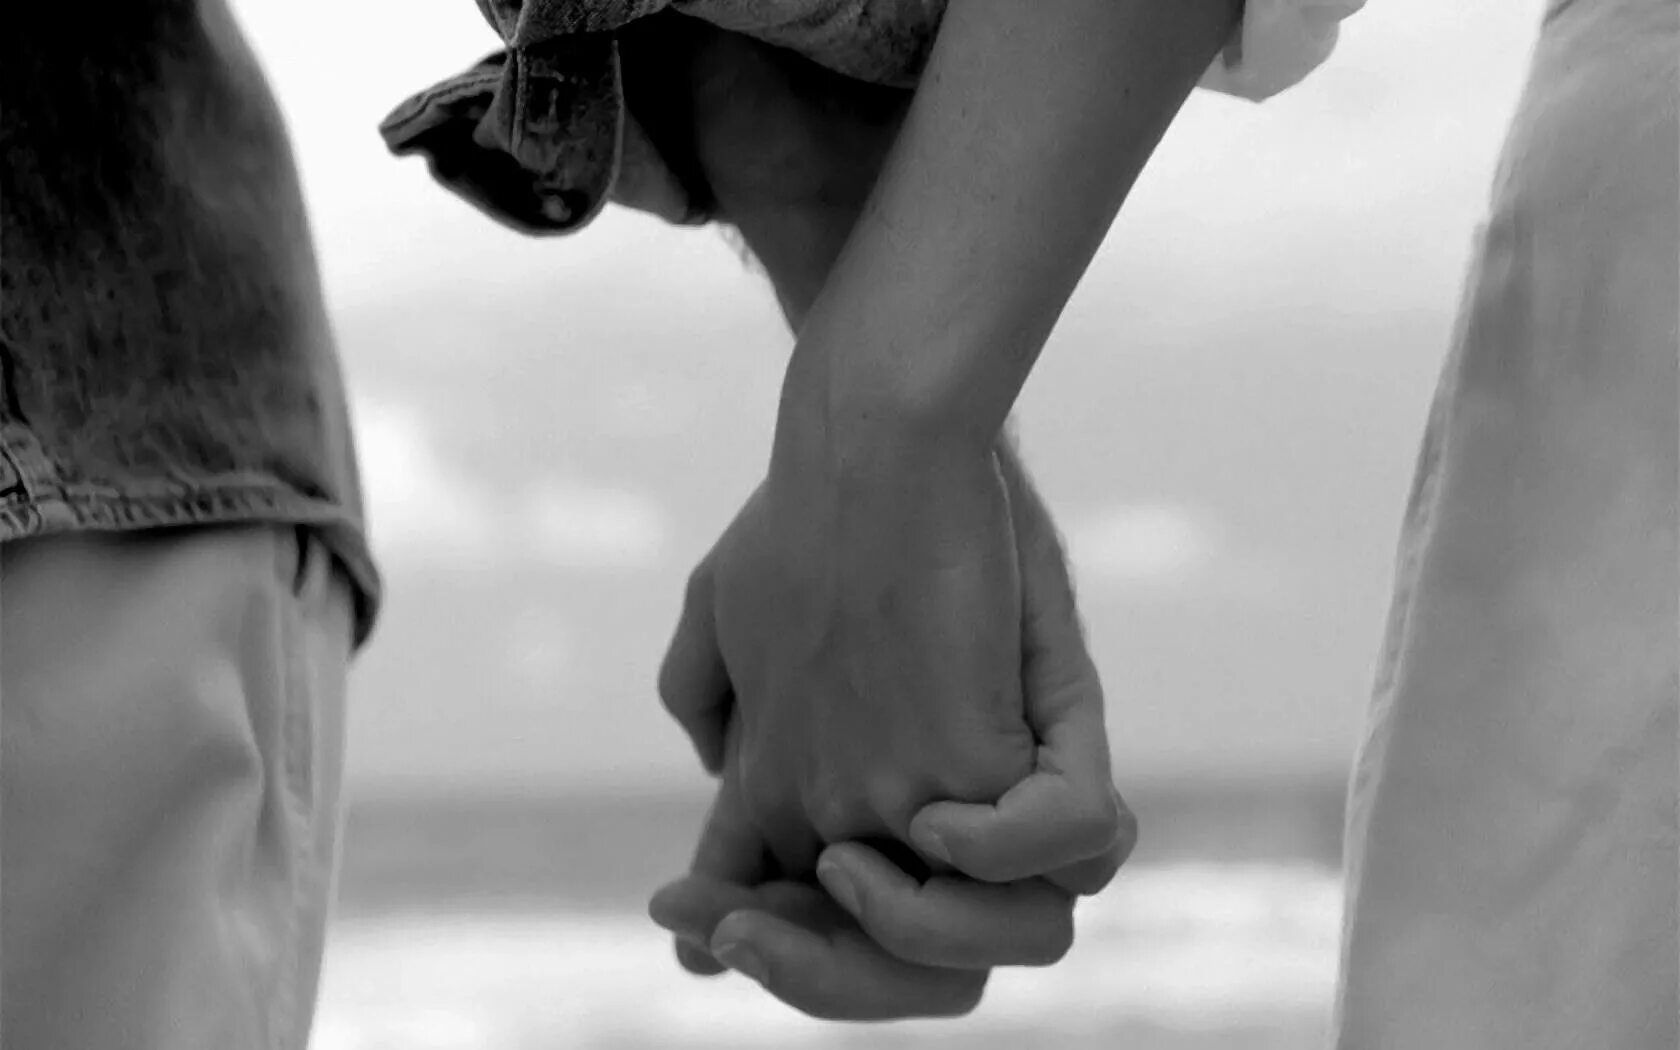 Истории рядом каждый день. Руки влюбленных. Держась за руки. Руки мужчины и женщины вместе. Взялись за руки.